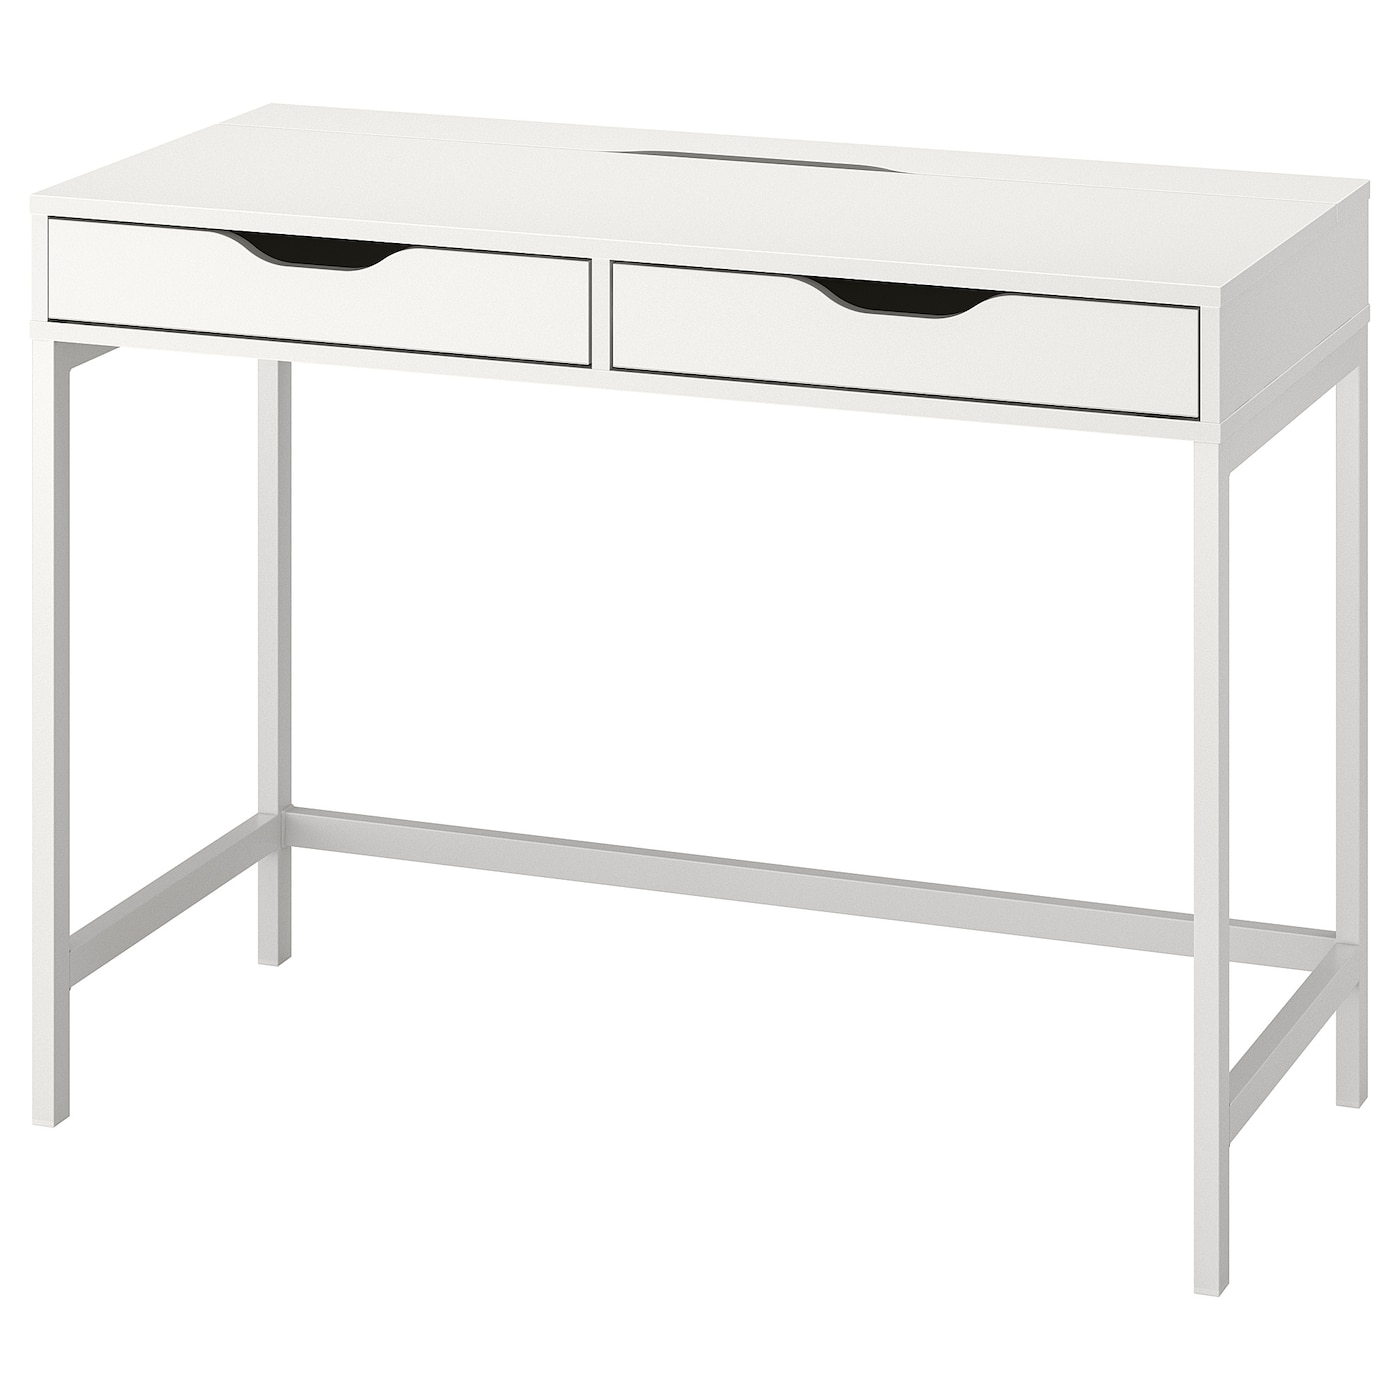 Письменный стол с ящиками - IKEA ALEX, 100x48 см, белый, АЛЕКС ИКЕА